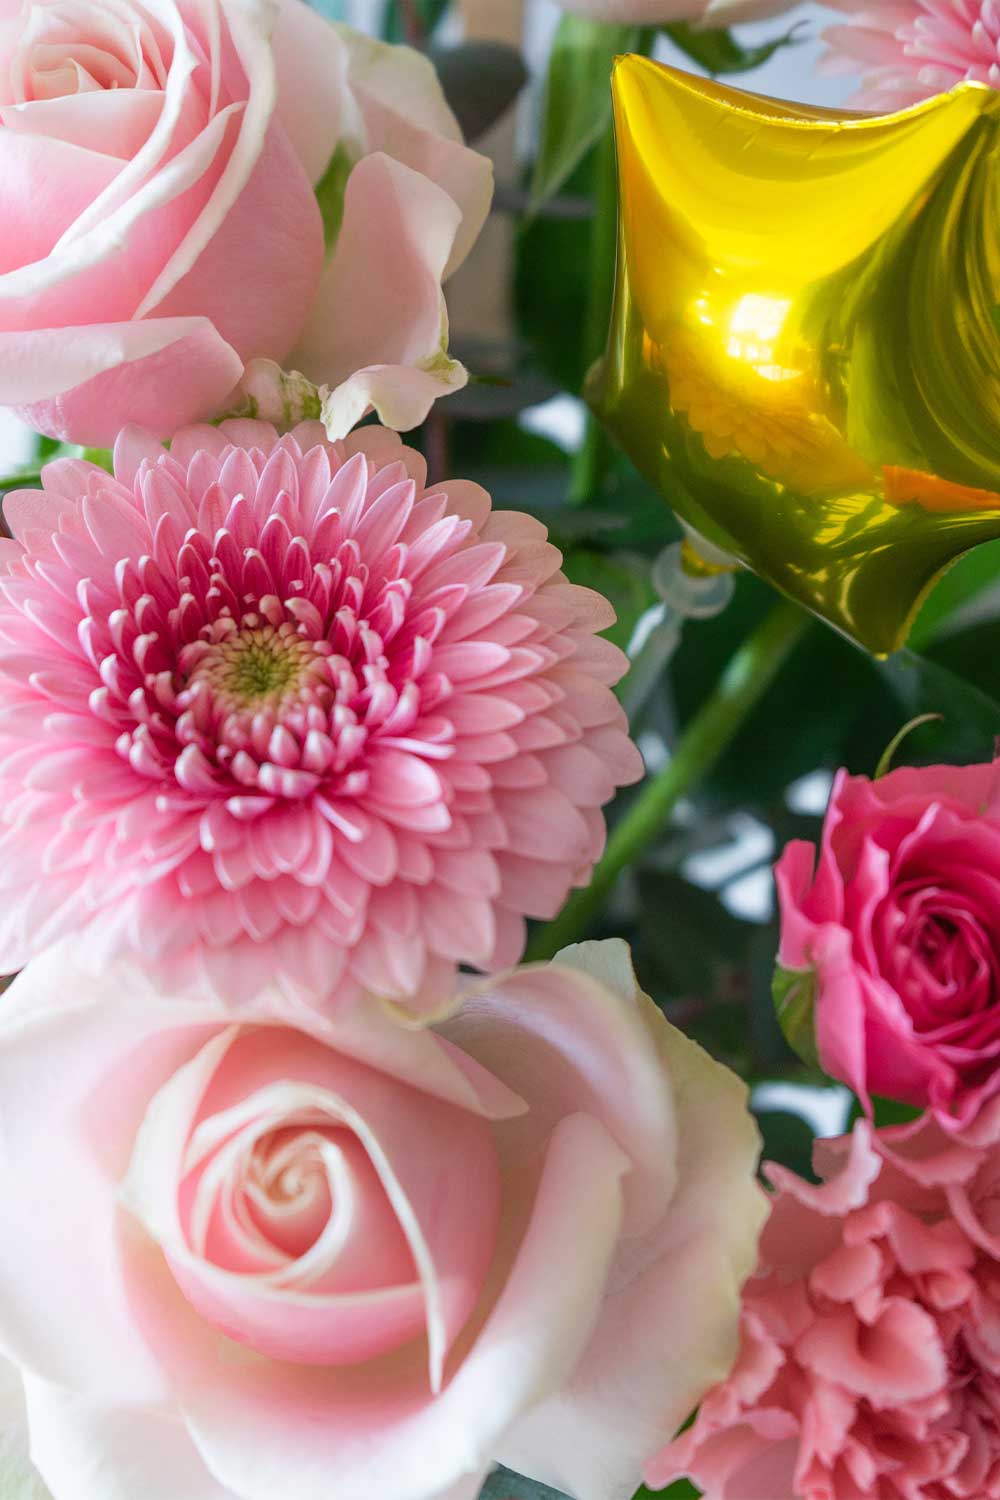 ピンク ピンク色のお花 お祝い お供えの花通販ギフトは送料無料の お花の窓口 へ